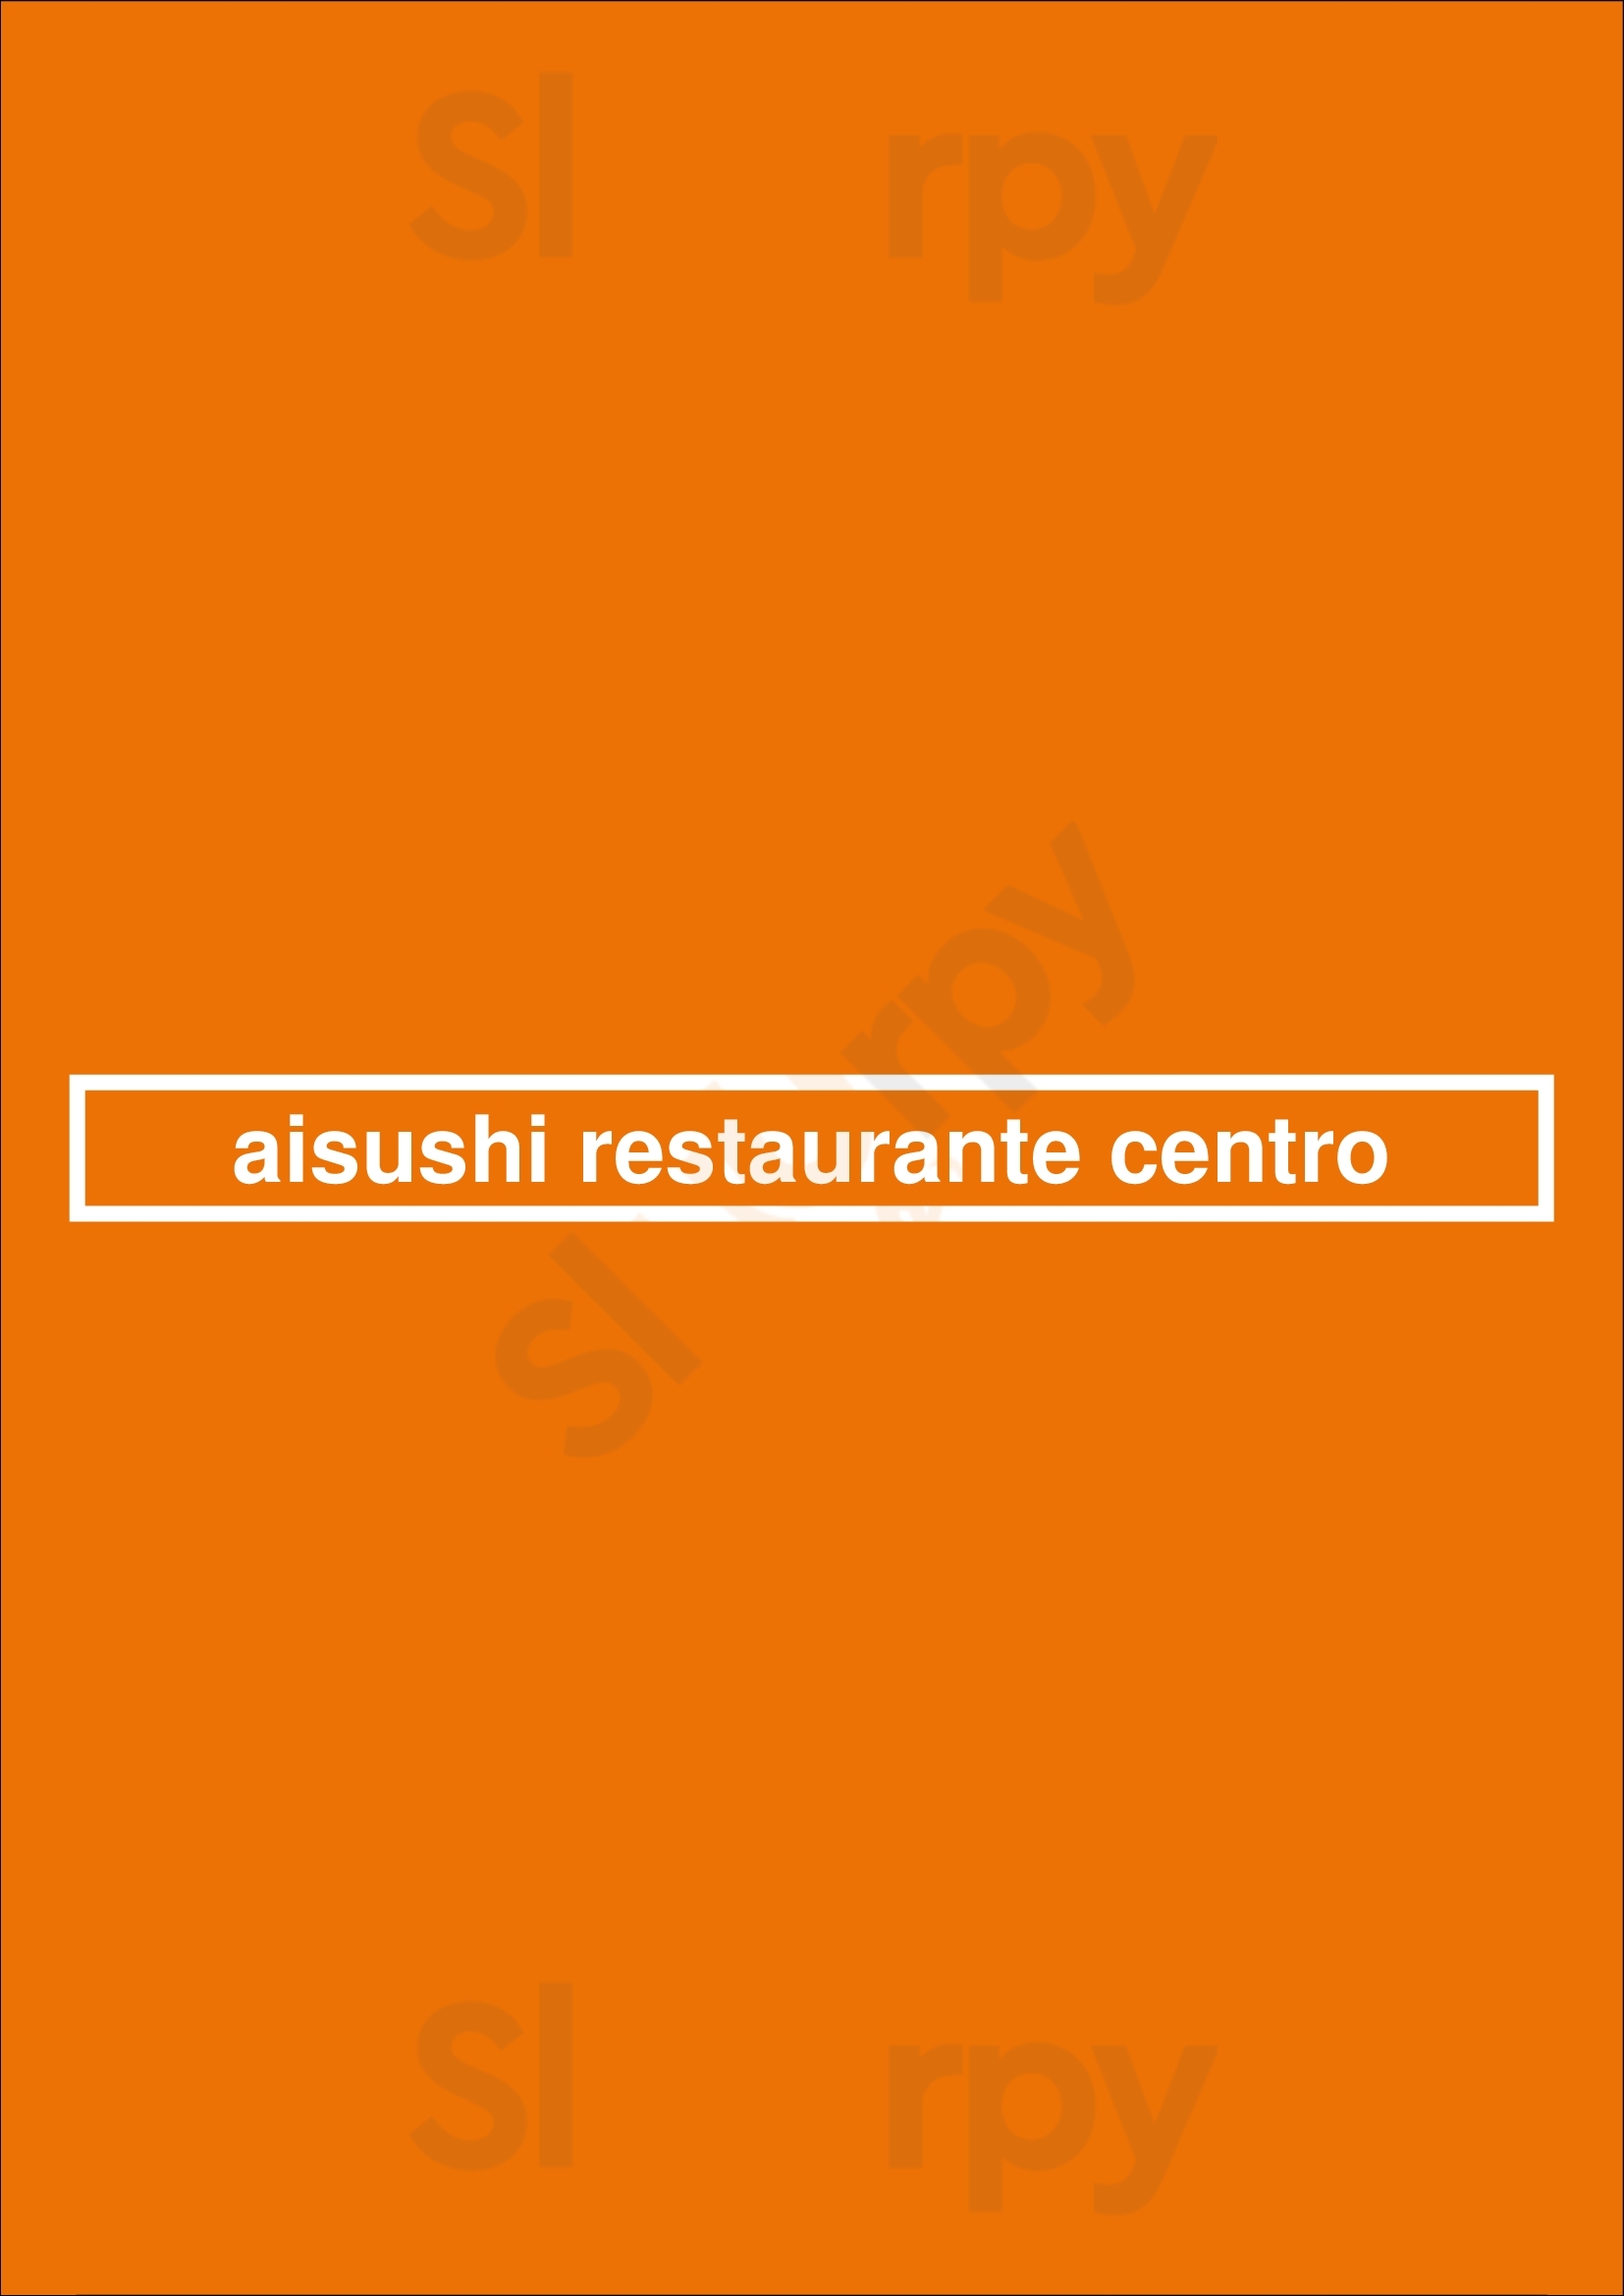 Aisushi Restaurante Centro Granada Menu - 1